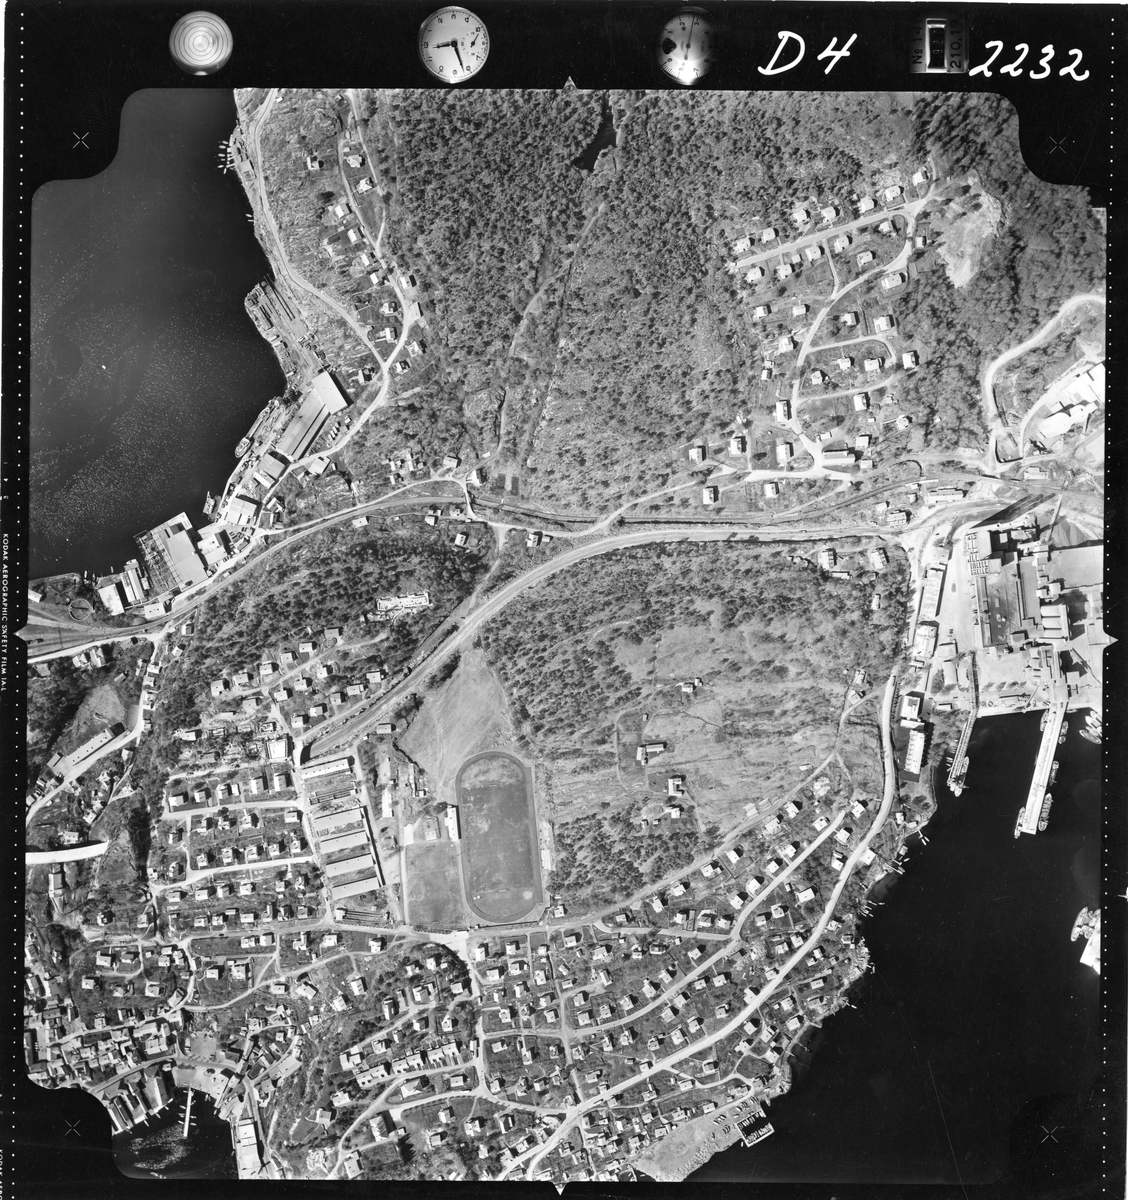 Flyfotoarkiv fra Fjellanger Widerøe AS, fra Porsgrunn Kommune,  Brevik. Fotografert 16/05-1962. Oppdrag nr 2232, D04